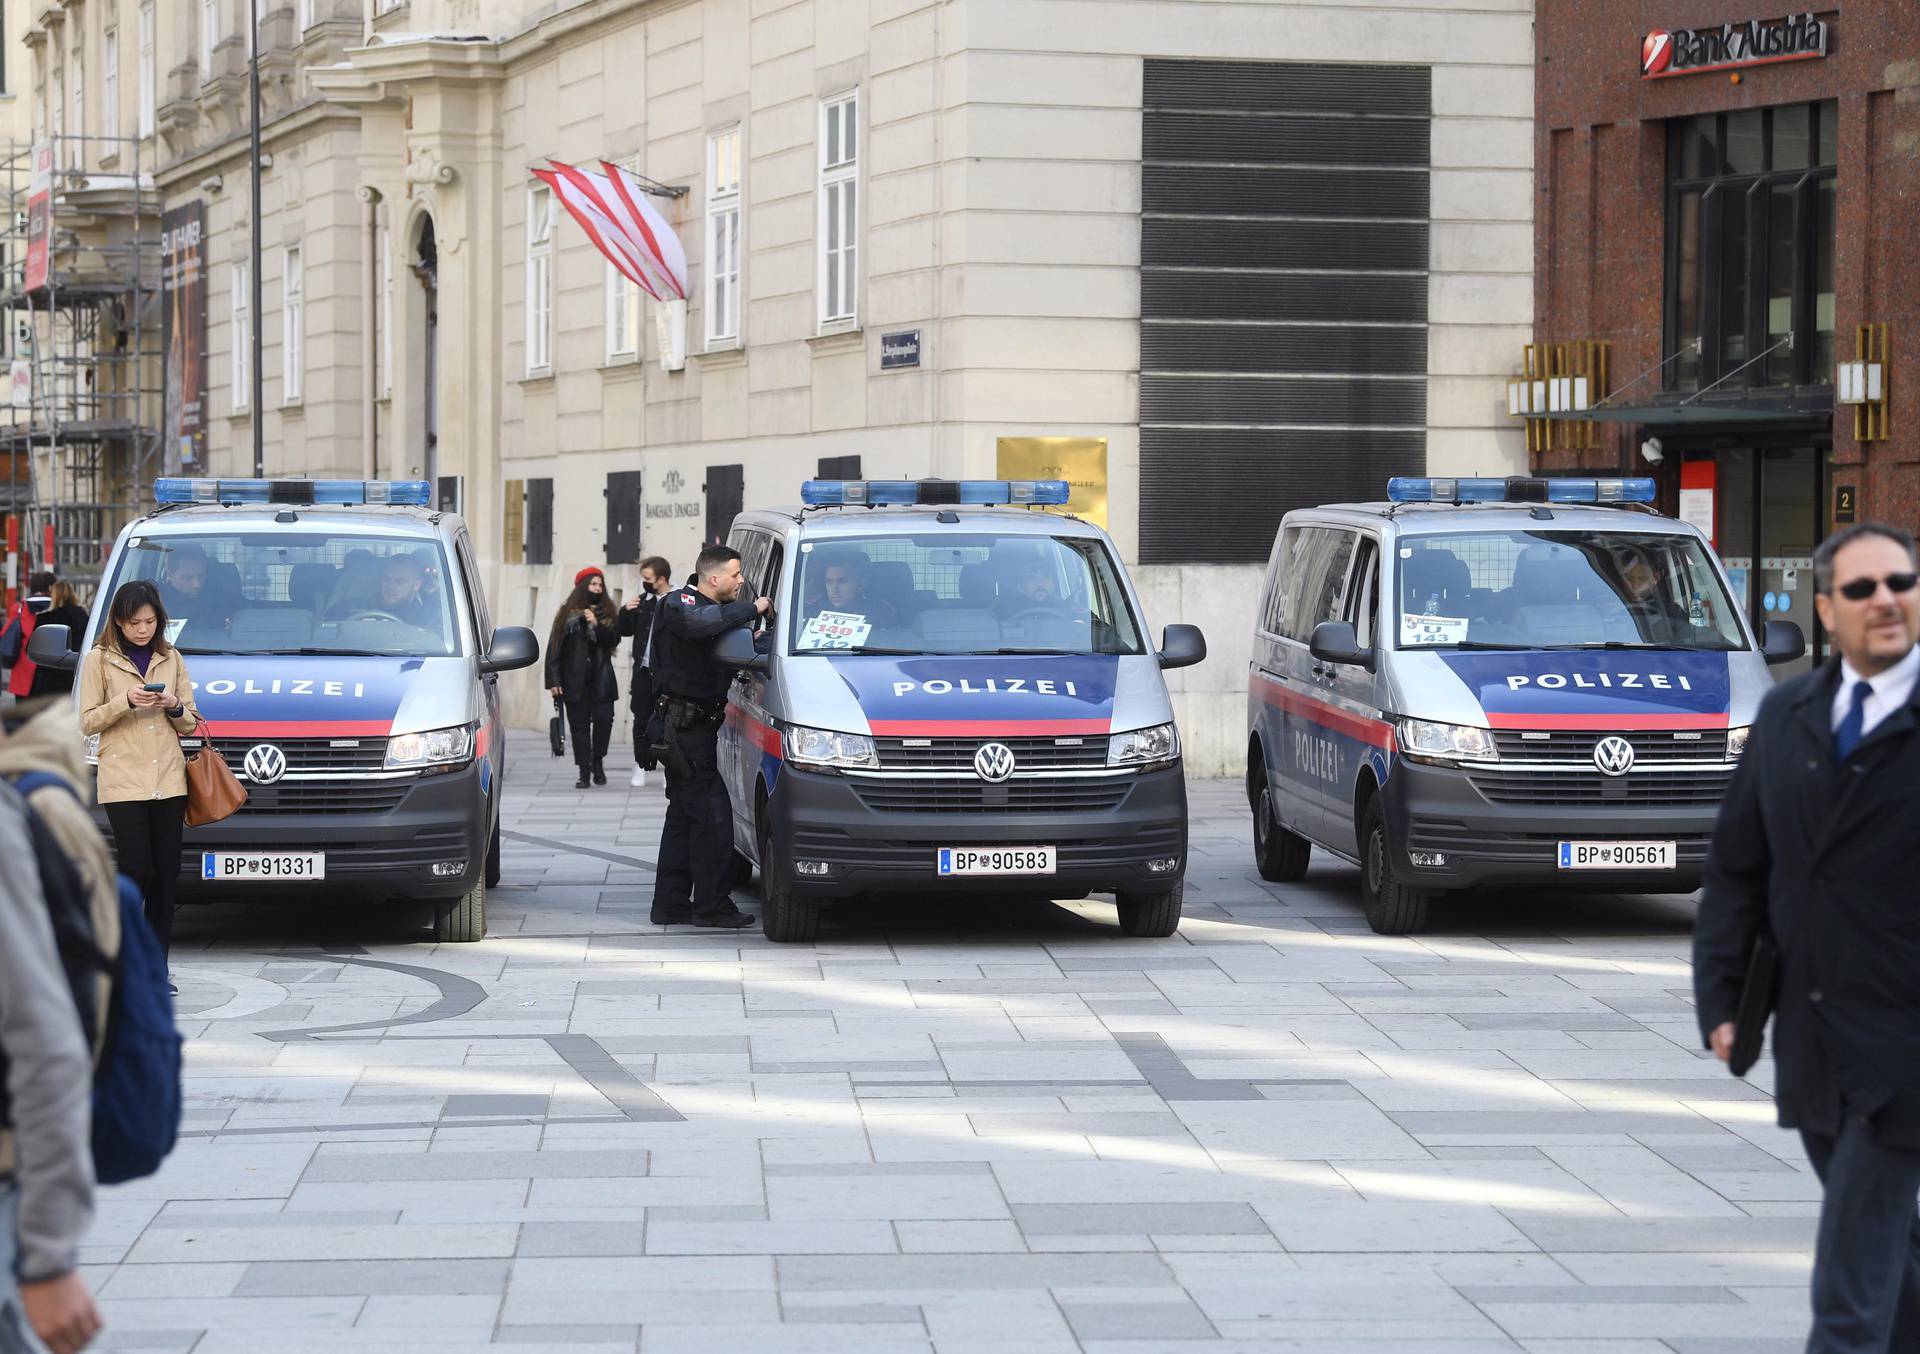 Cijeli je Beč danas modri: Gdje god se okreneš, Hrvati! Policija češlja sve, a potvrde ne pitaju...